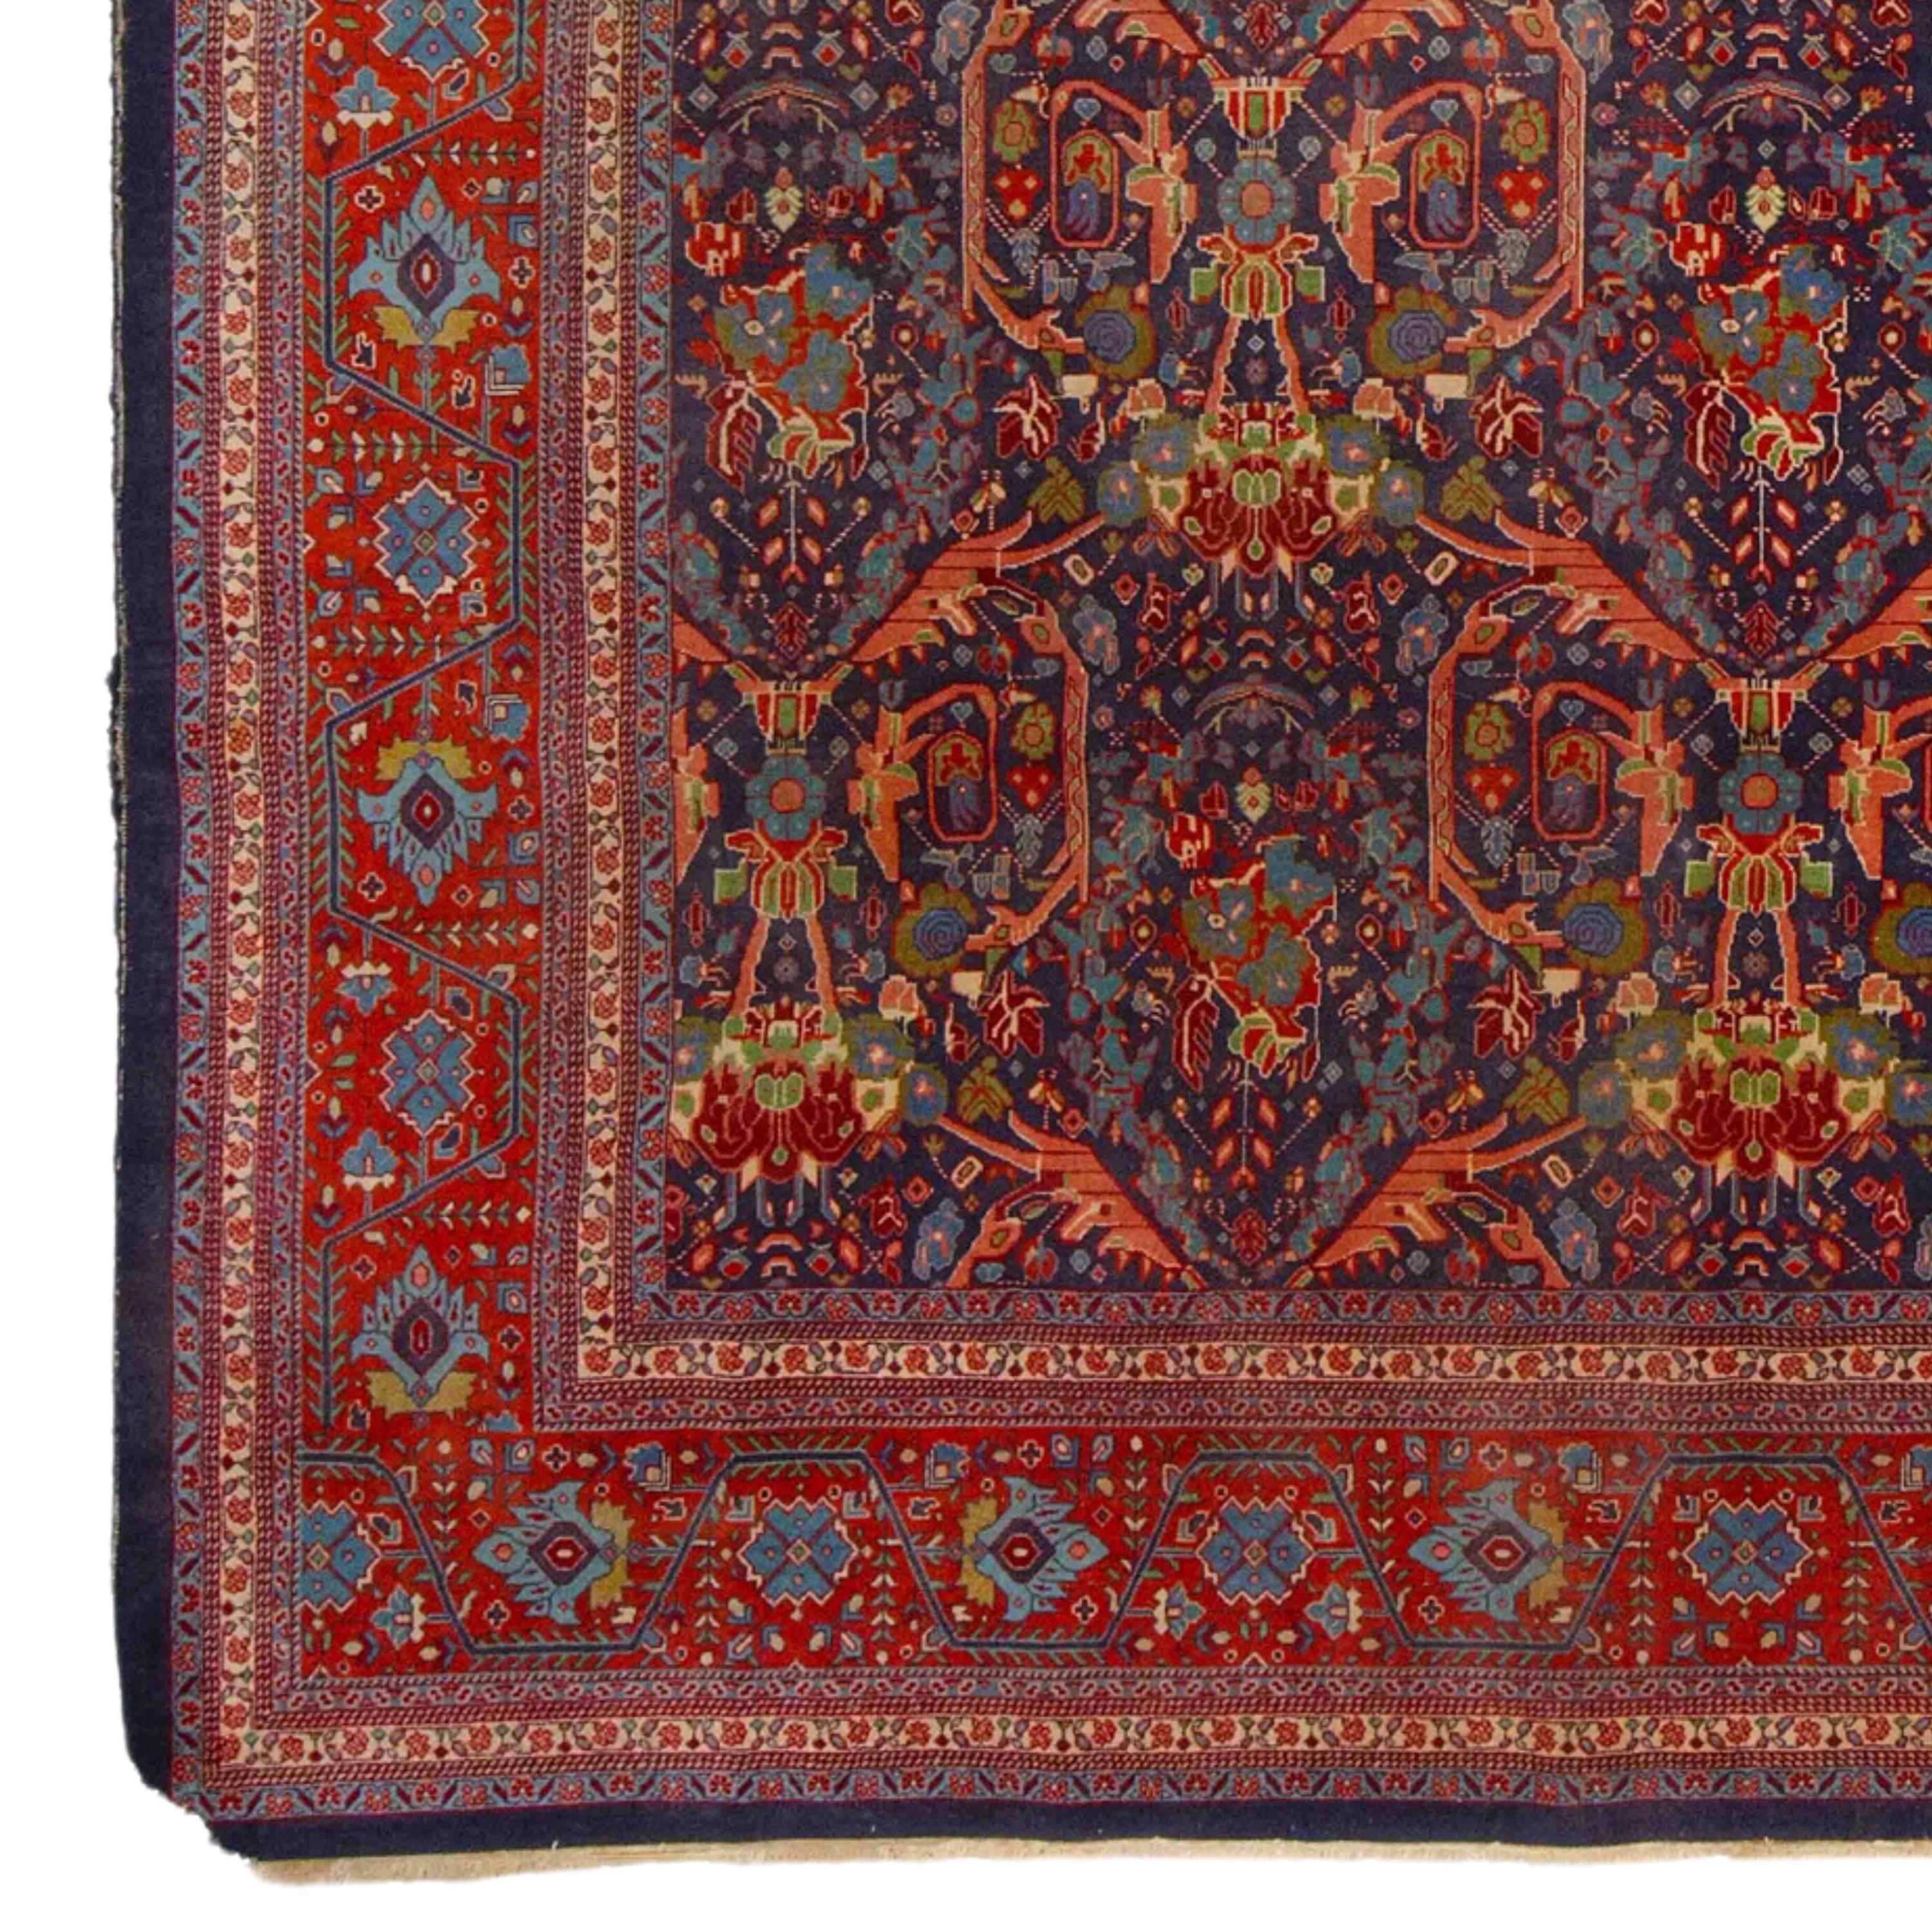 Tapis ancien de Tabriz 255x370 cm (8,36 x 12,13 ft) Fin du 19ème siècle Tapis de Tabriz

À partir du milieu du XIXe siècle, la production commerciale de tapis a repris en Azerbaïdjan, et Tabriz est devenu l'un des centres les plus importants du